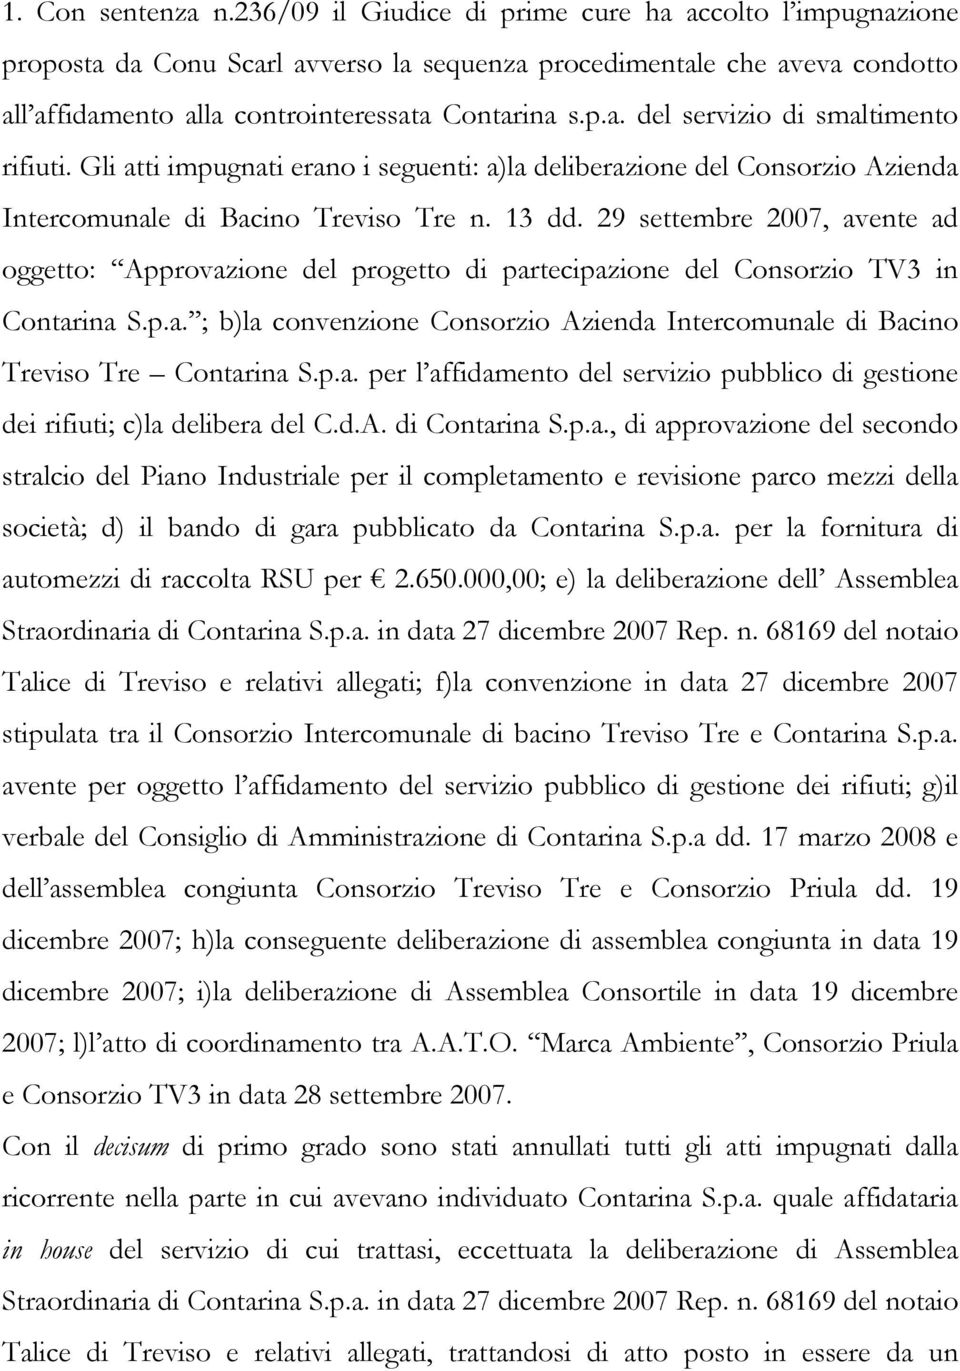 Gli atti impugnati erano i seguenti: a)la deliberazione del Consorzio Azienda Intercomunale di Bacino Treviso Tre n. 13 dd.